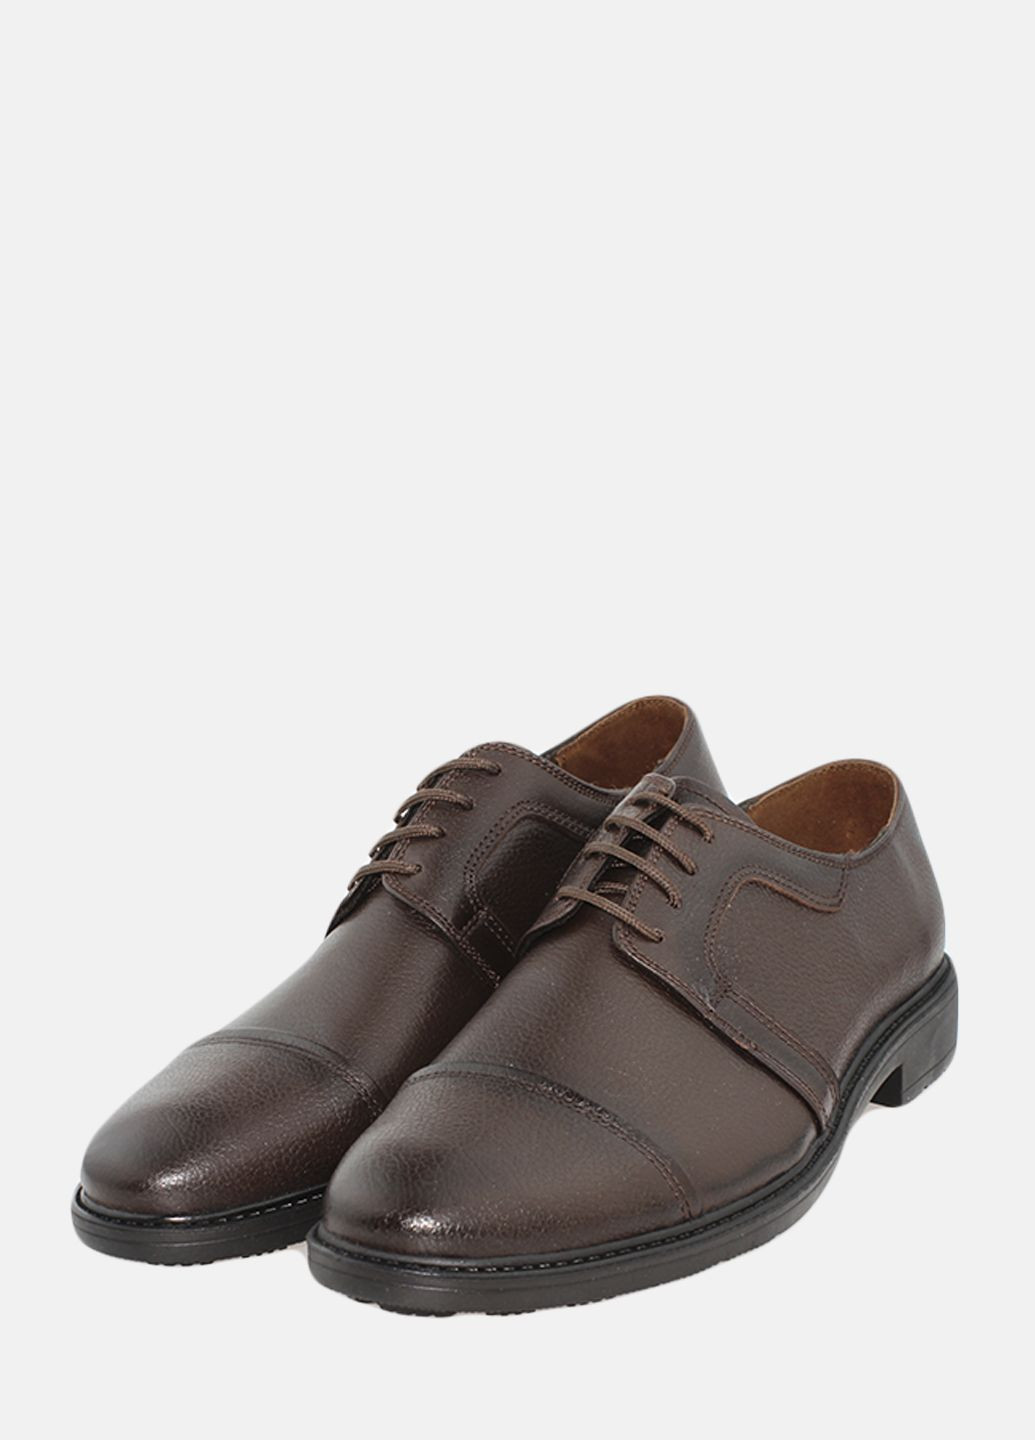 Коричневые туфли g1025.02 коричневый Goover